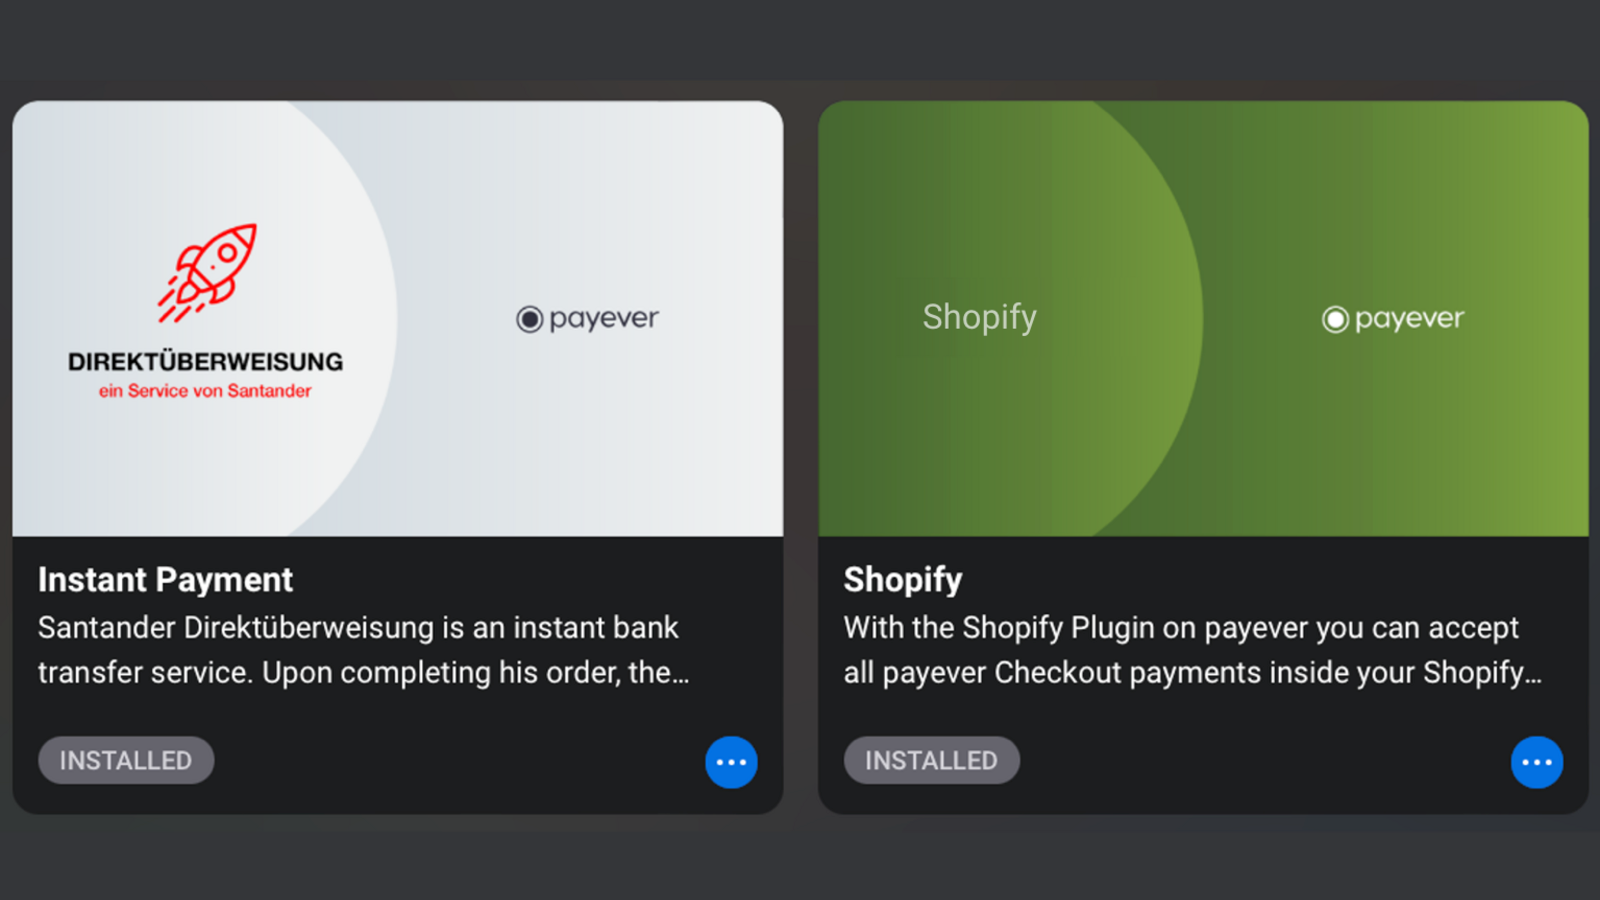 Direktüberweisung und Shopify App in payever